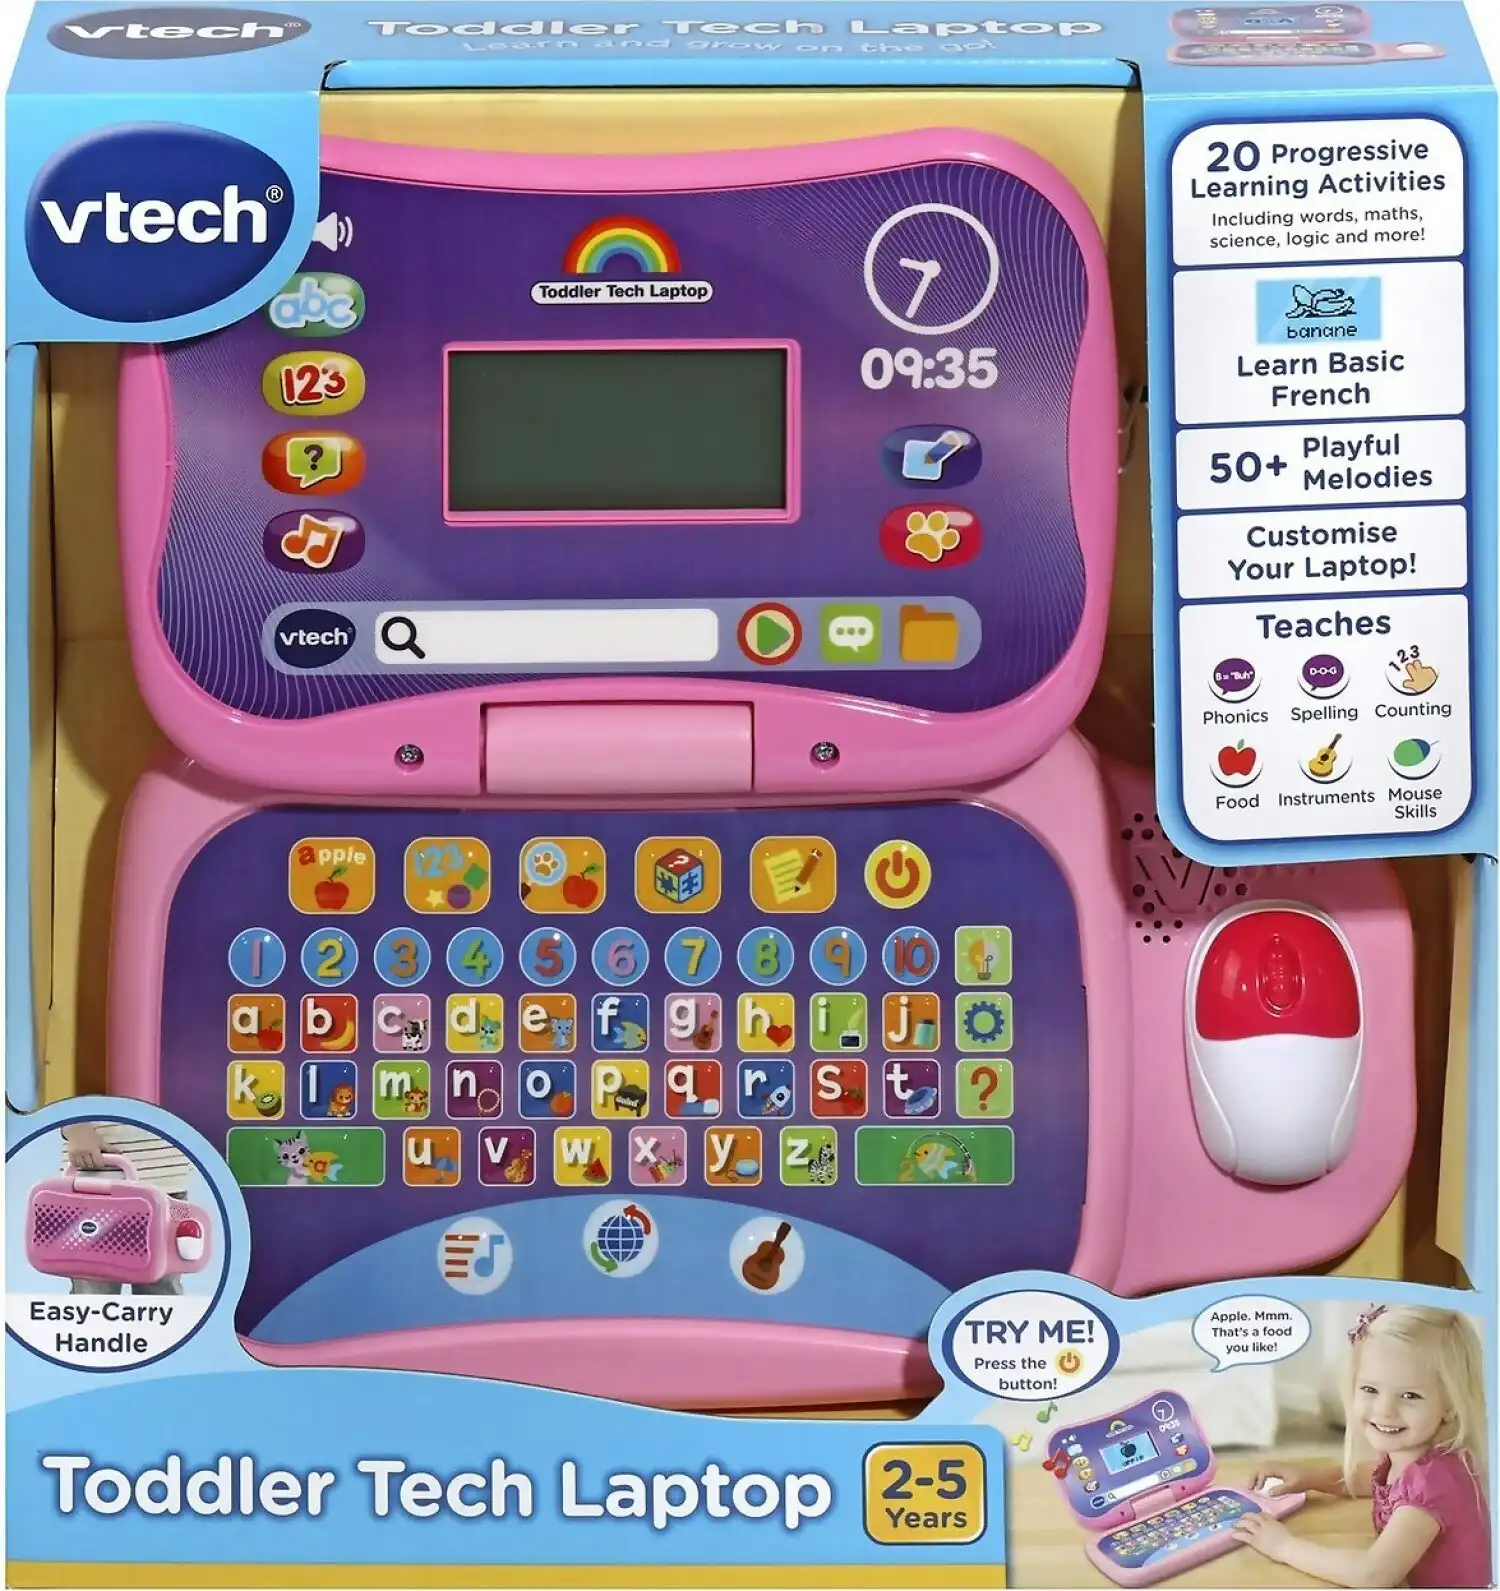 VTech - Toddler Tech Laptop - Pink